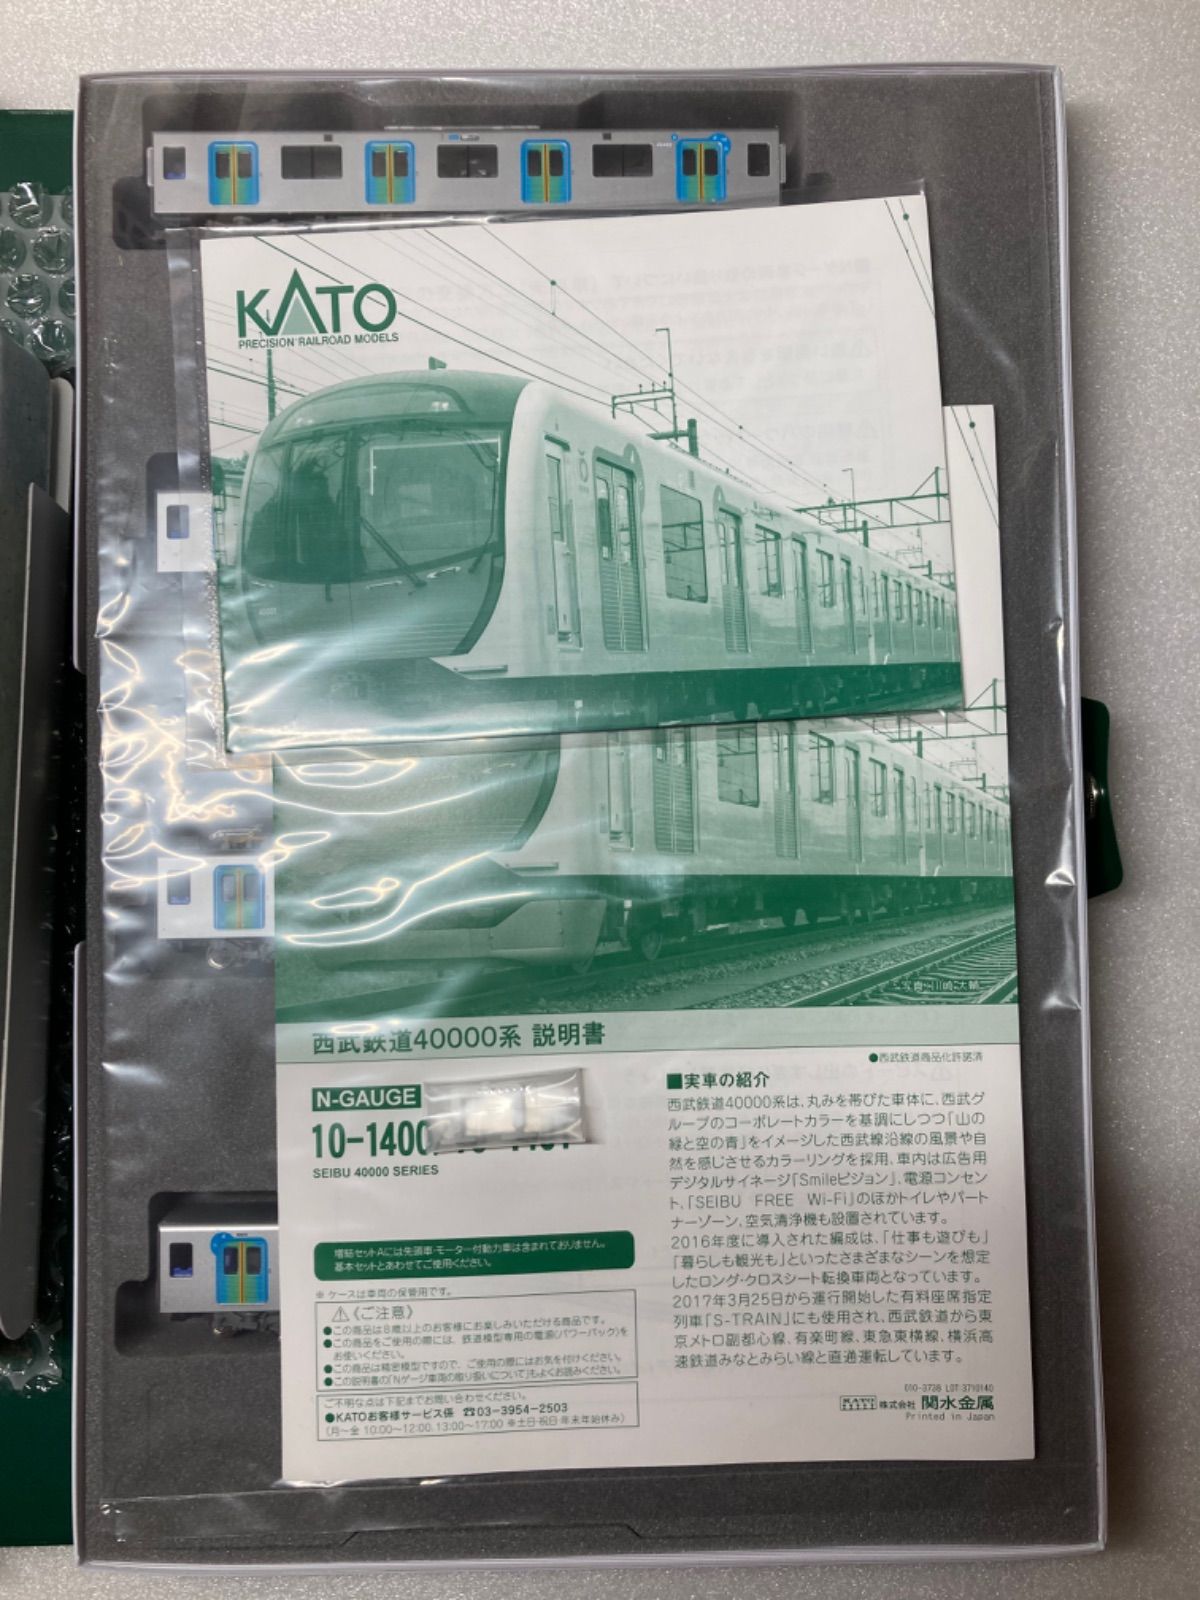 KATO 西武40000系 S-TRAIN 10両フルセット 10-1400他 - なすの